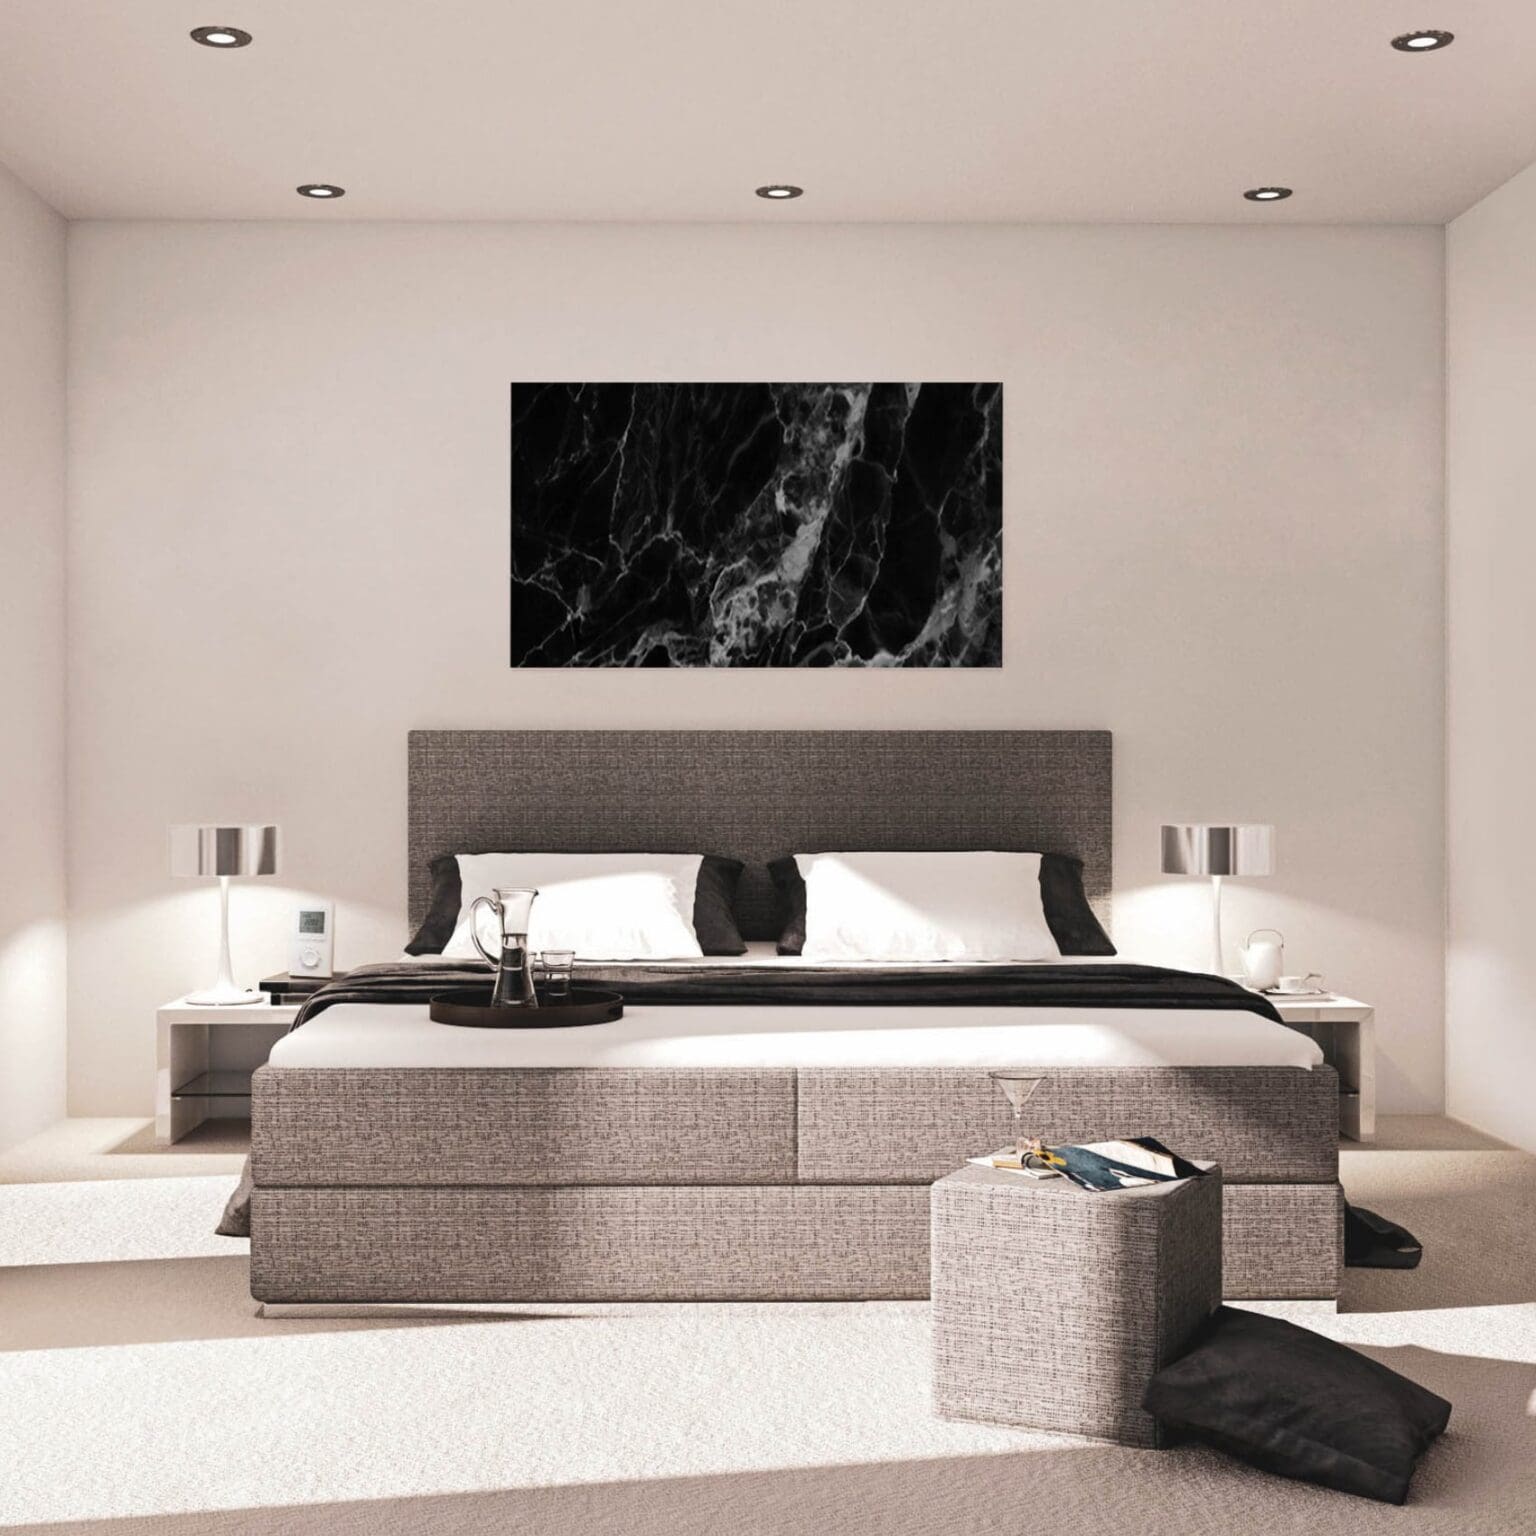 slaapkamer met stone art infrarood verwarming infrarood verwarming kopen infrarood paneel slaapkamer bijverwarming slaapkamer infrarood paneel in de slaapkamer